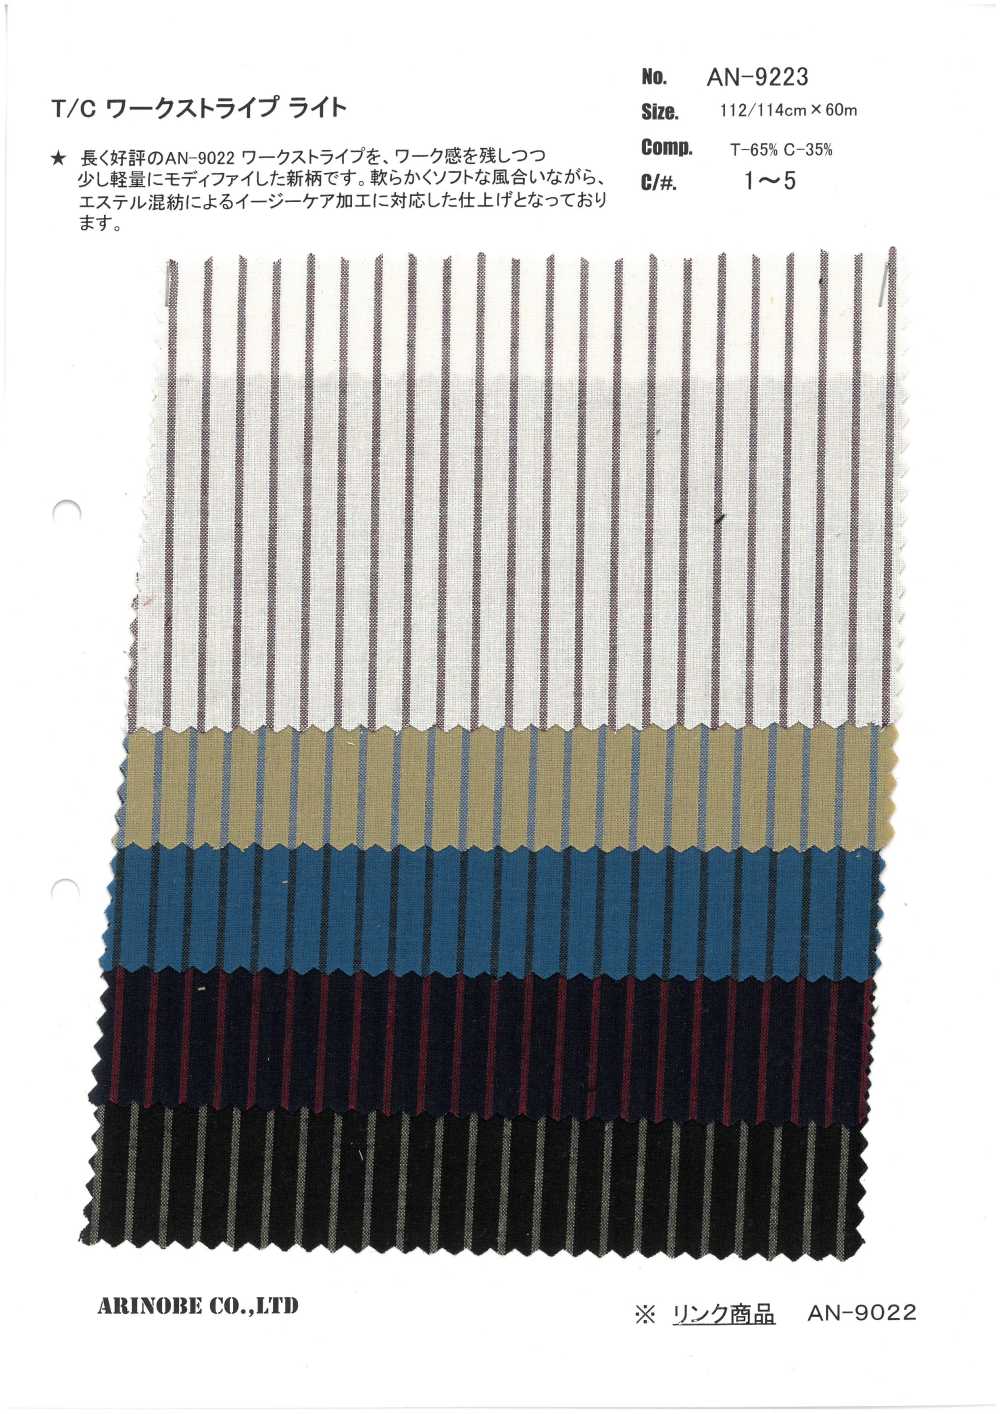 AN-9223 T/C Workstripe Leichtgewicht[Textilgewebe] ARINOBE CO., LTD.